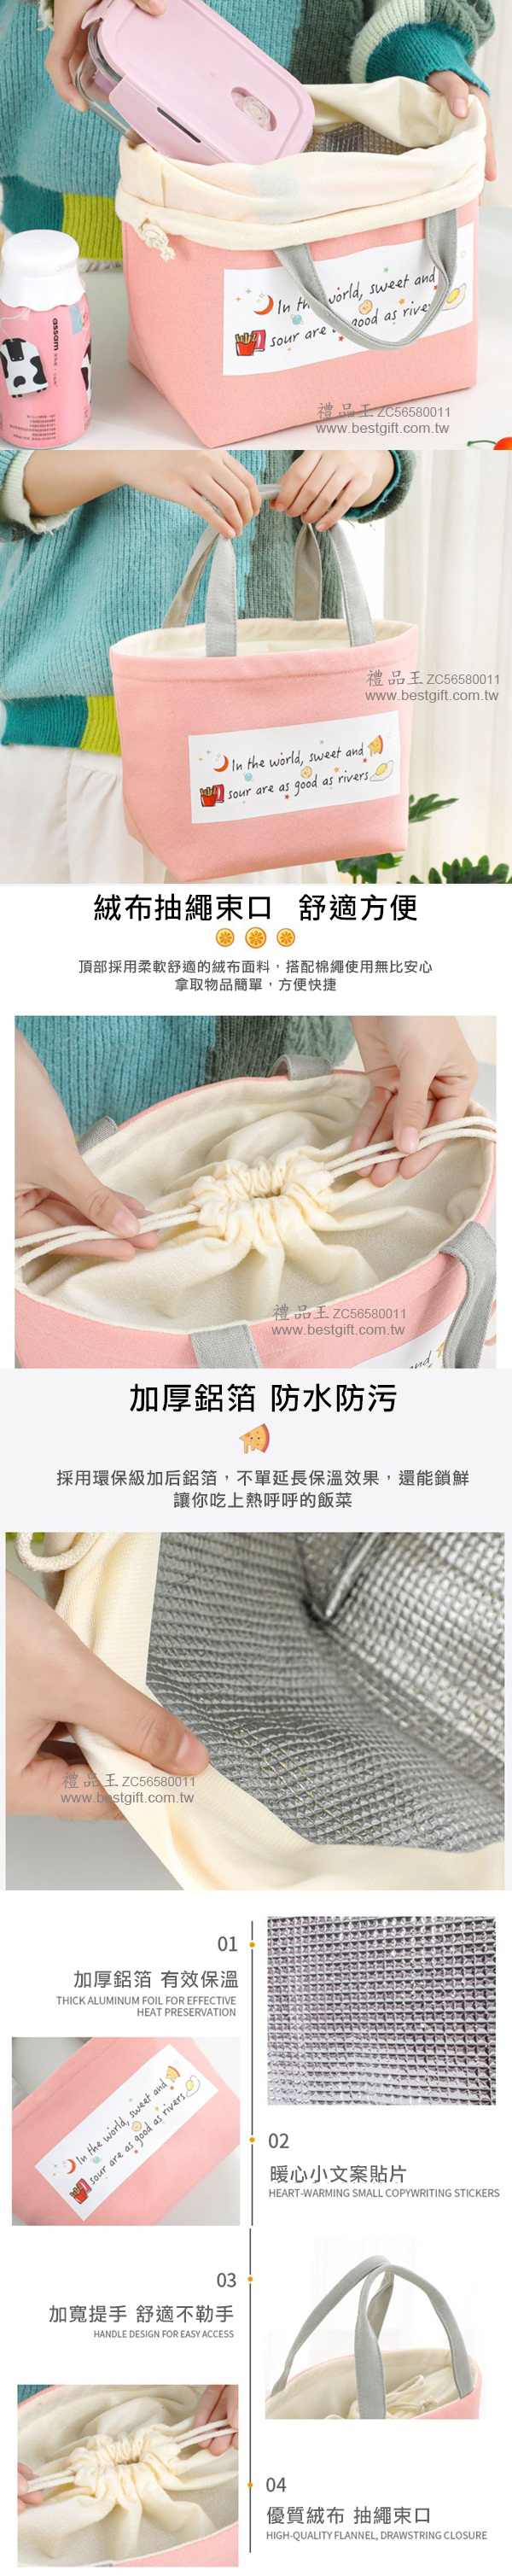 日式棉麻抽繩保溫餐袋  商品貨號: ZC56580011   